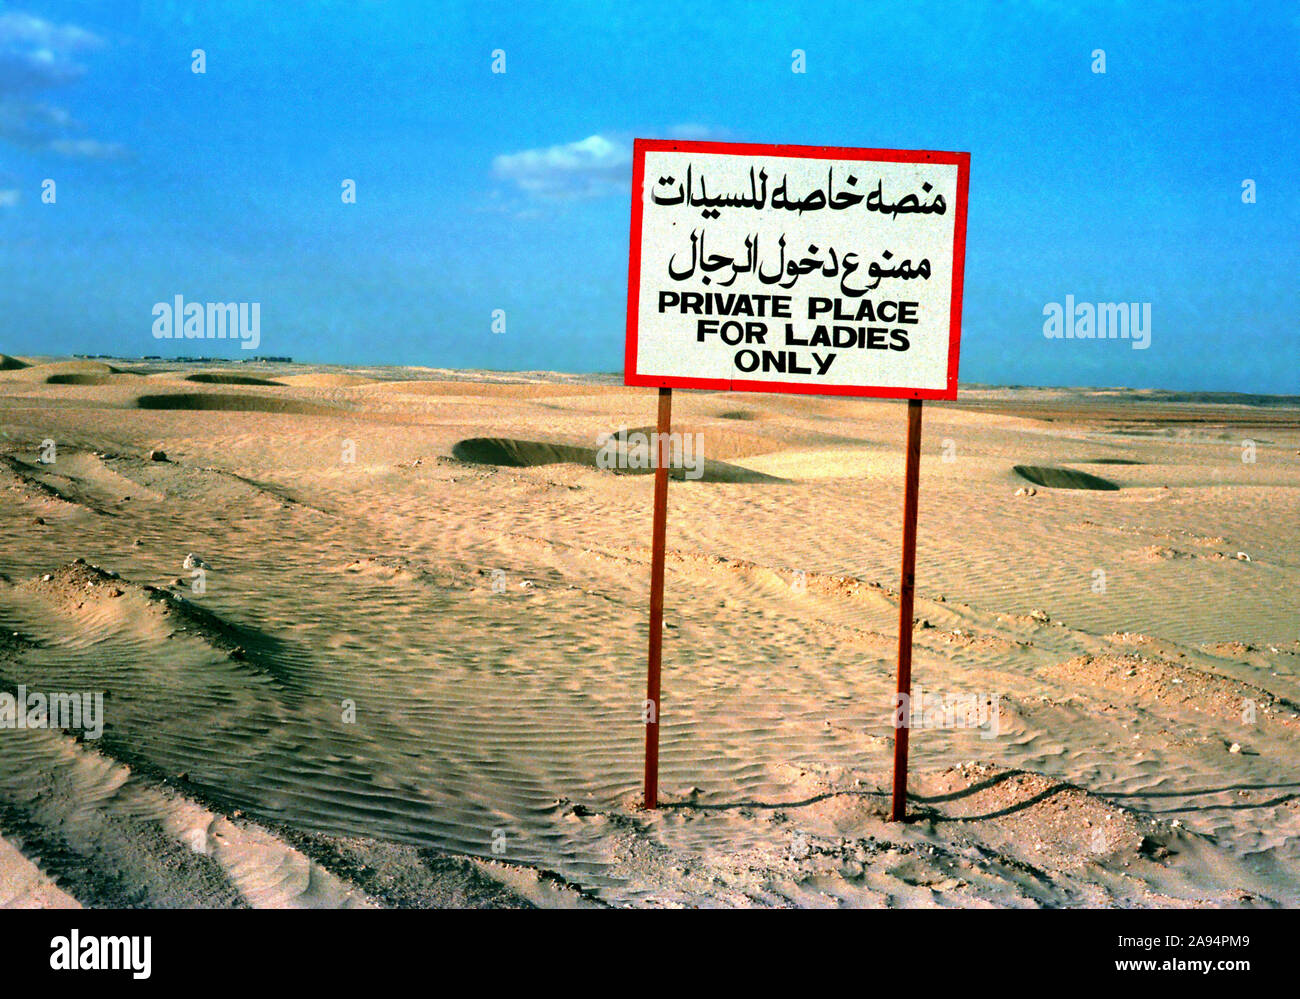 Endroit privé pour les dames à l'Al Wathba Camel Race Track dans les années 1980, Abou Dhabi, Émirats Arabes Unis Banque D'Images